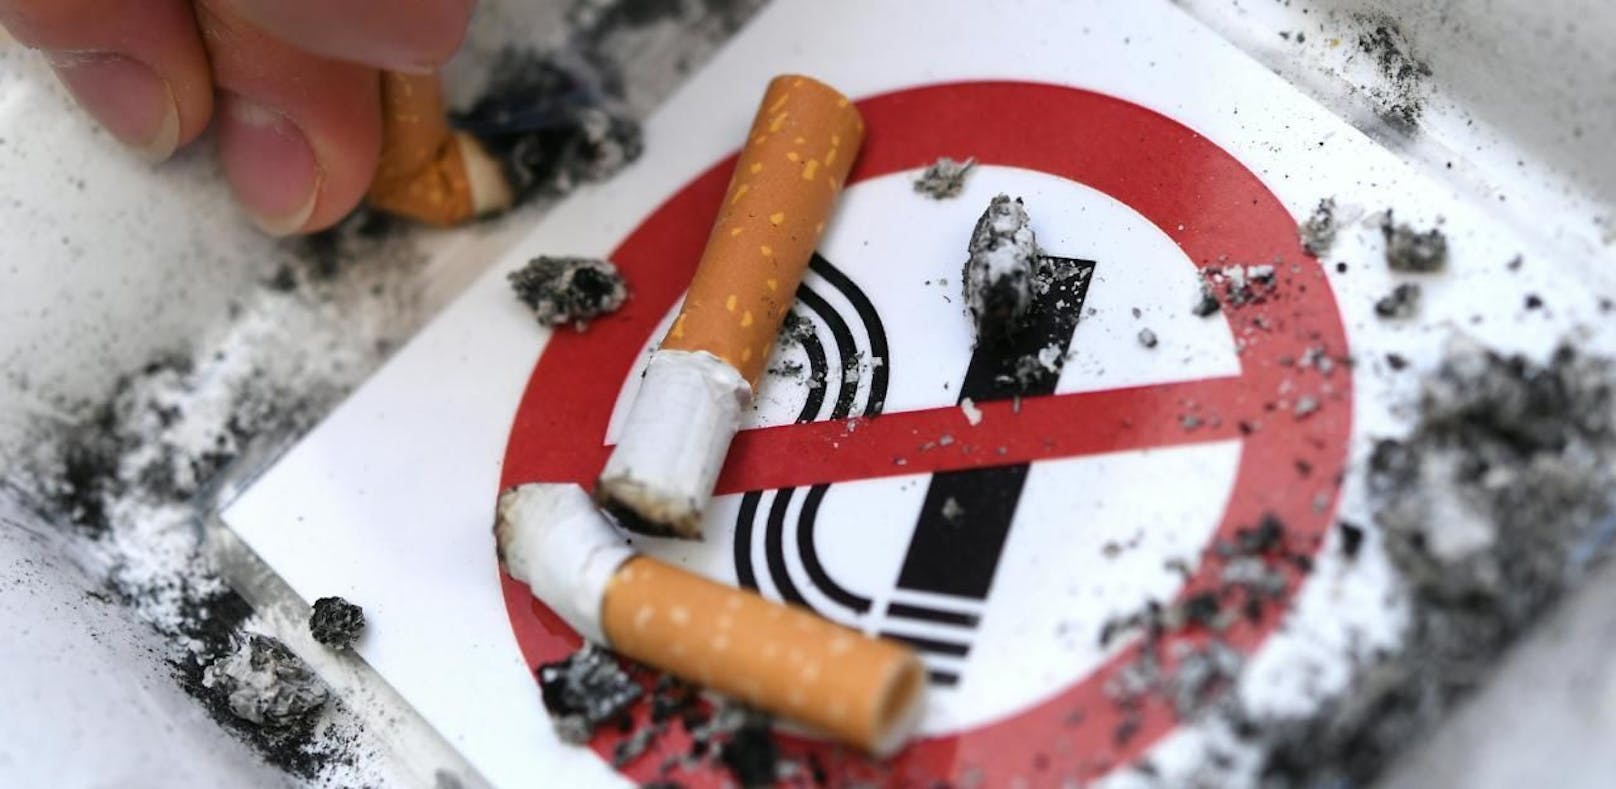 Das Rauchverbot für Unter-18-Jährige soll Mitte 2018 kommen.